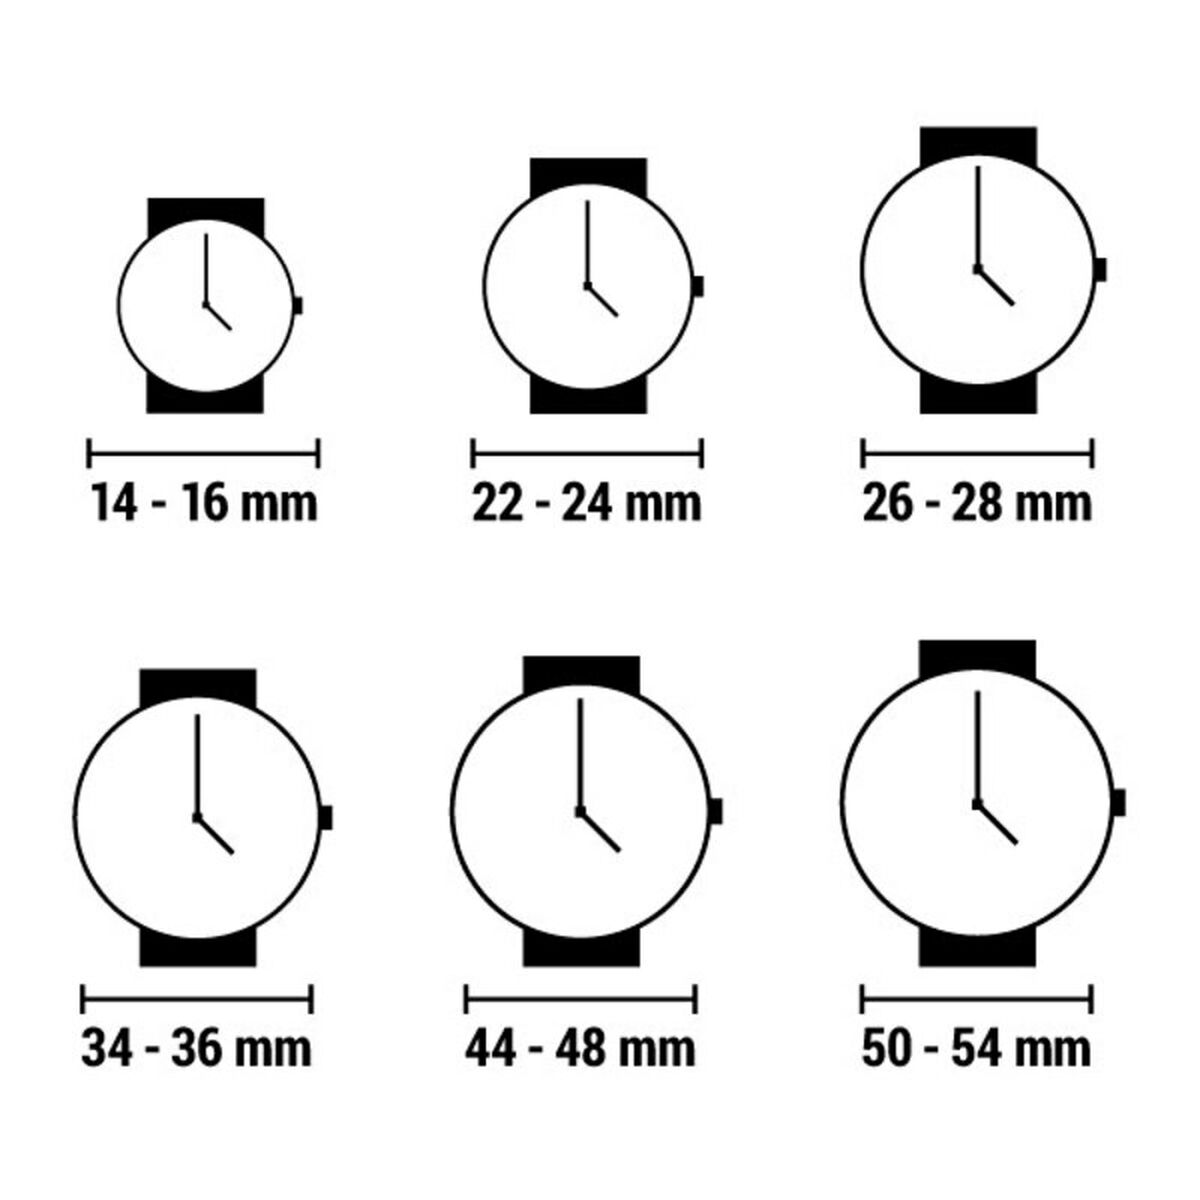 Horloge Dames Arabians DBA2265S (Ø 33 mm)